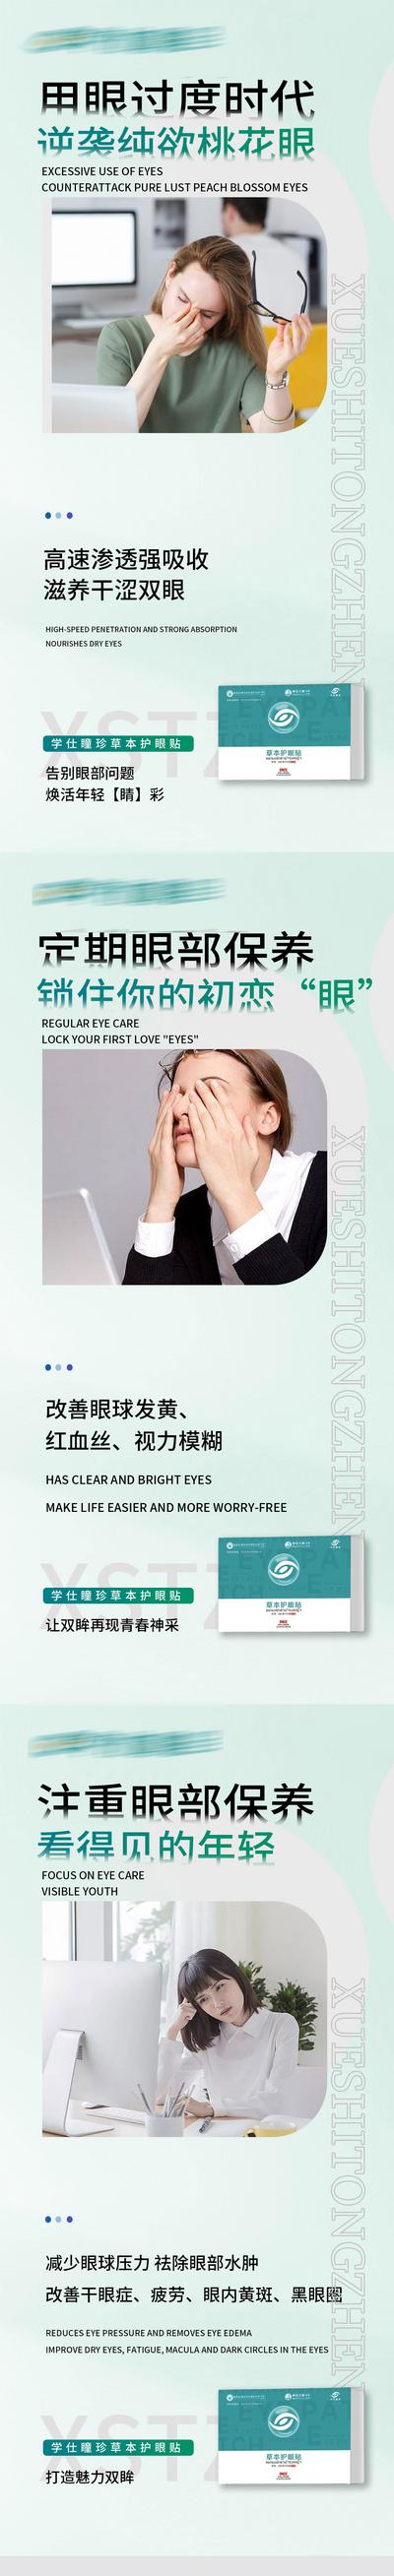 南门网 广告 新零售 眼睛 视力 宣传 微商 防控 护眼 大健康 保健 眼镜